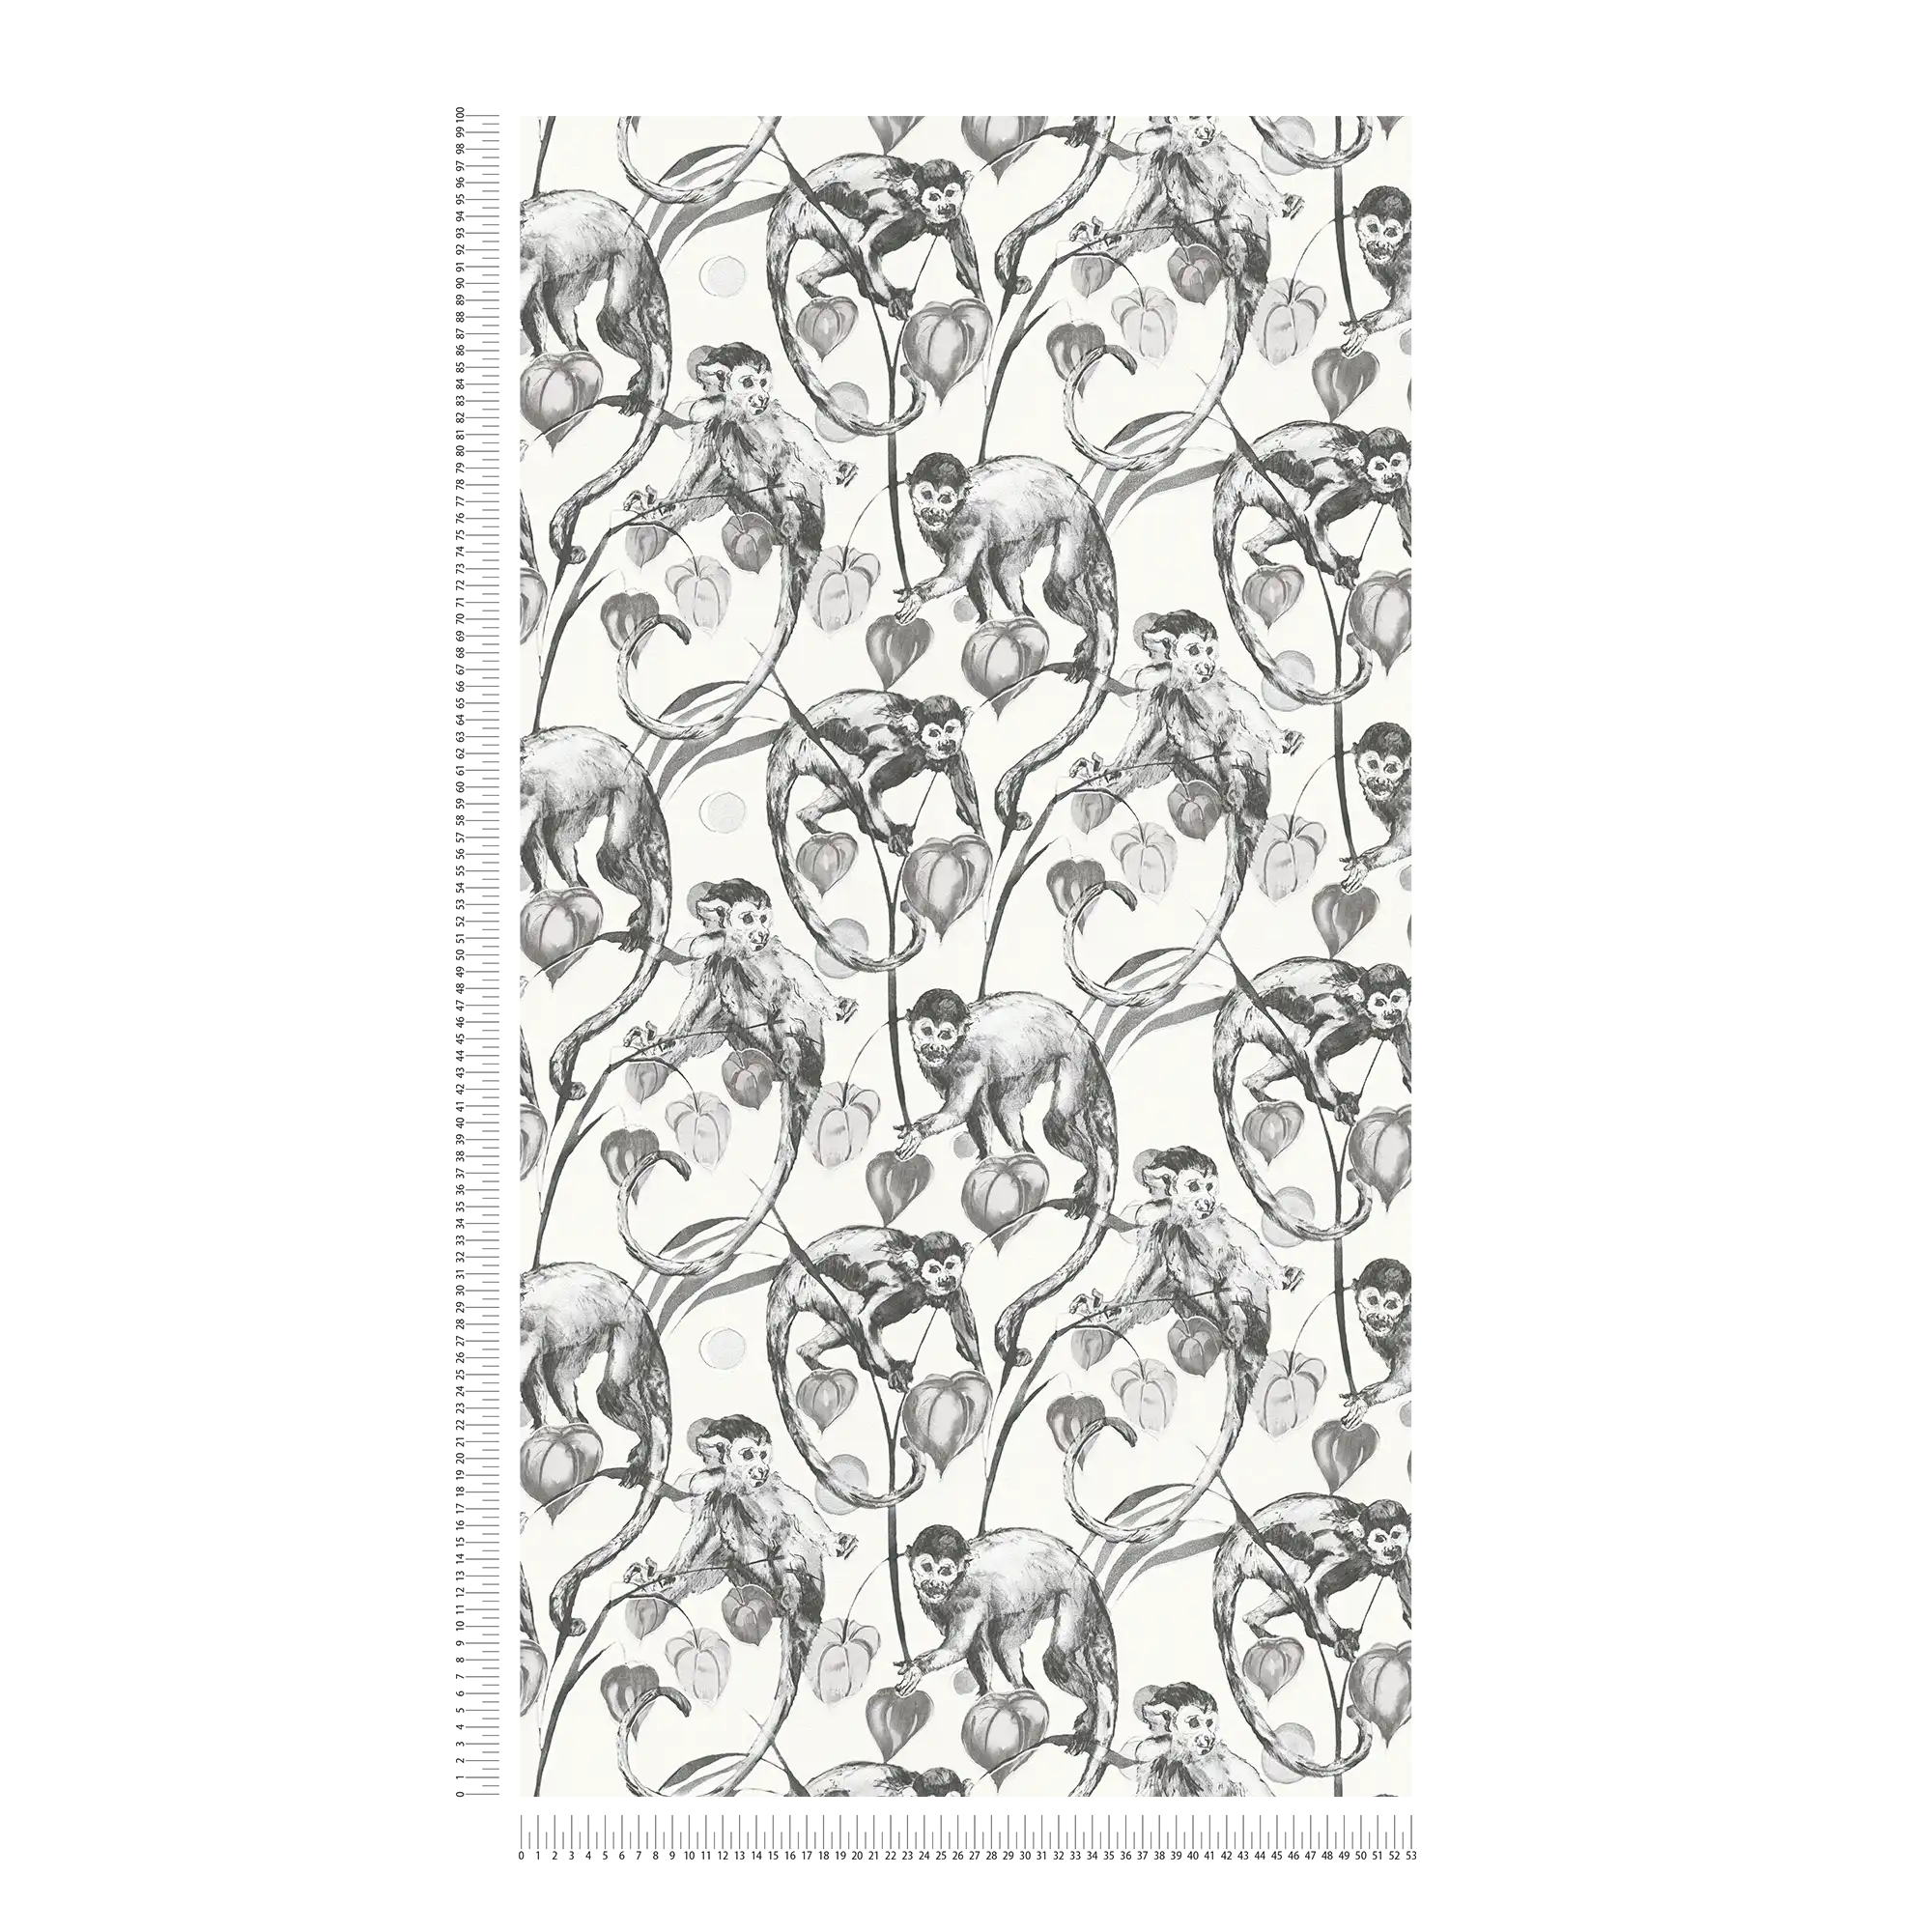             MICHALSKY vliesbehang zwart-wit apenpatroon
        